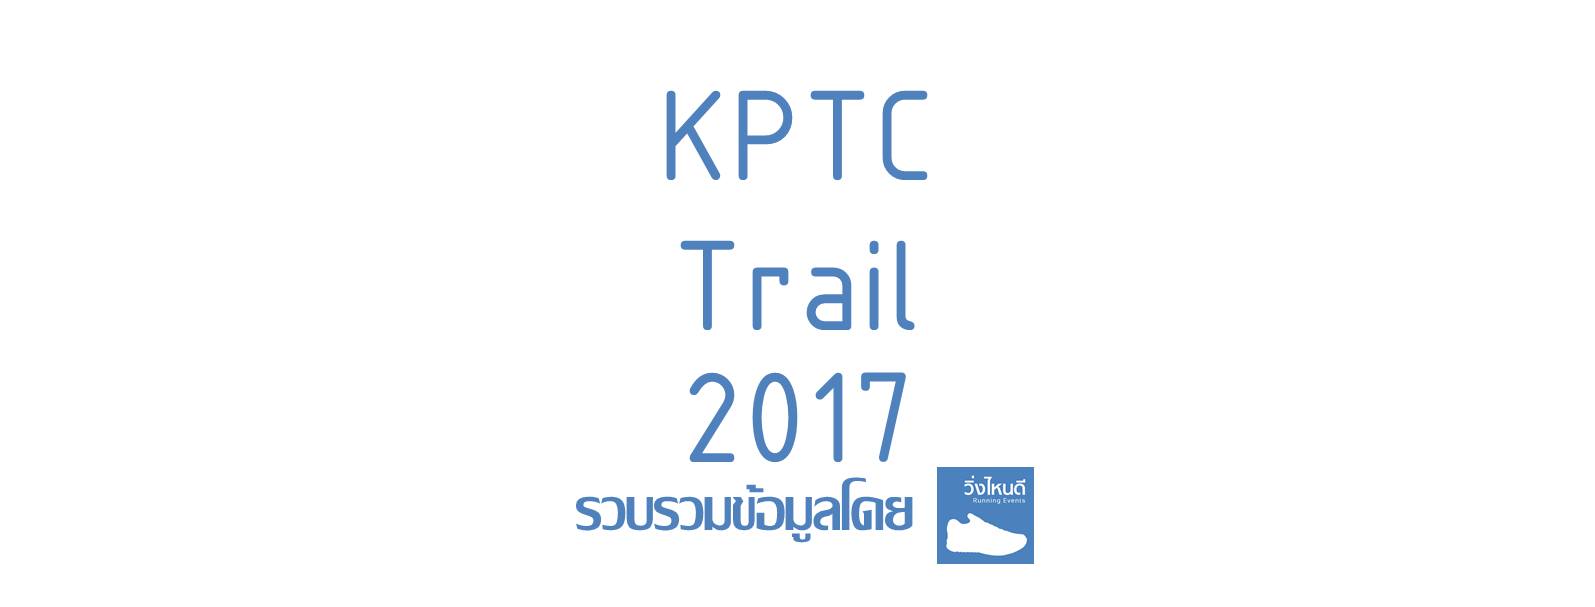 KPTC Trail 2017